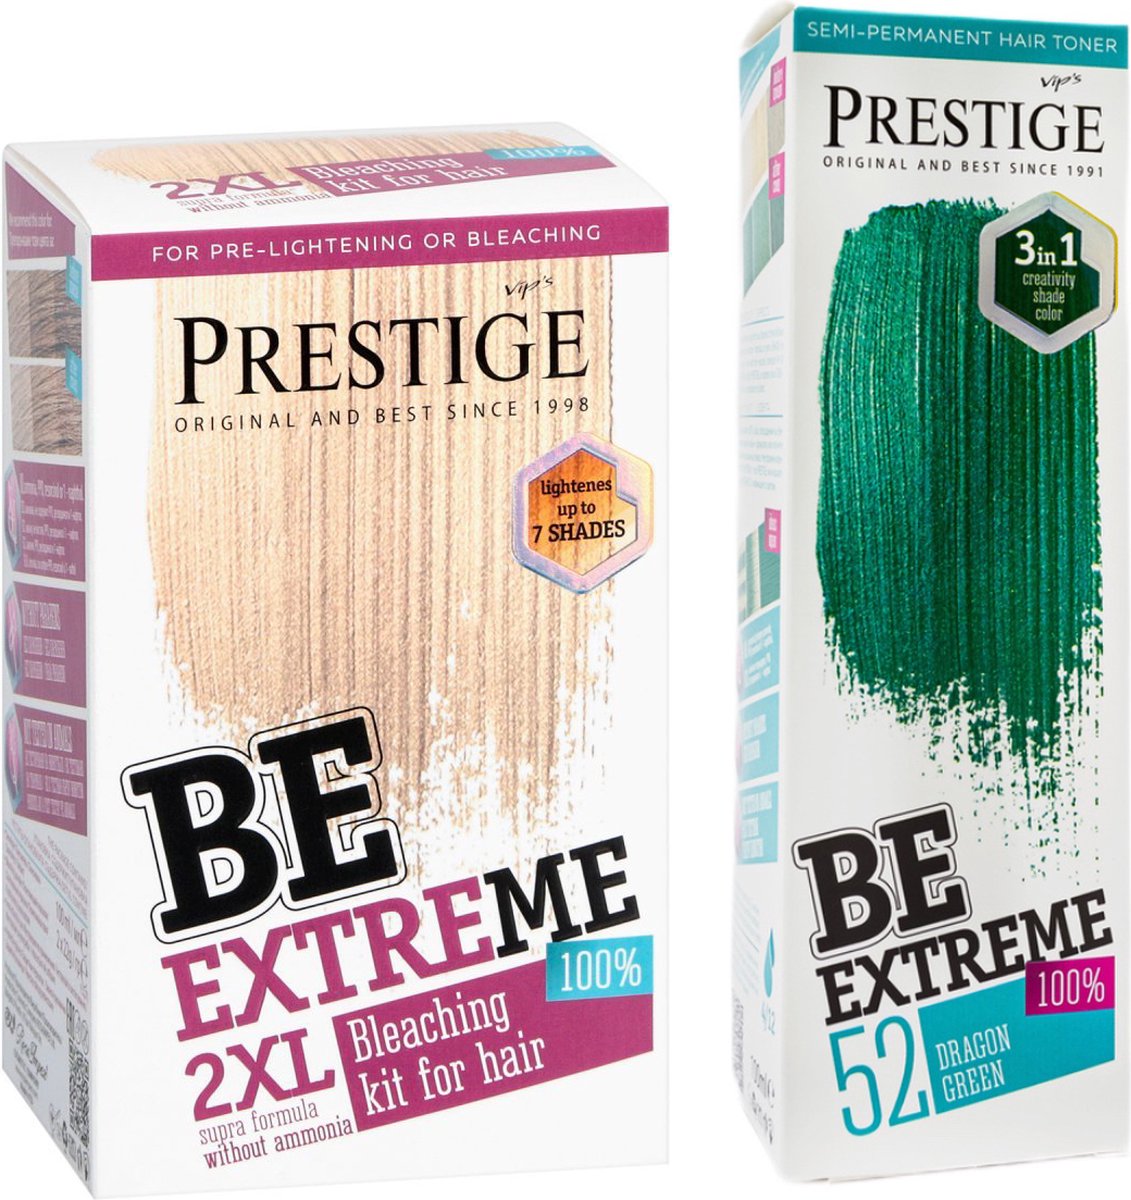 Prestige BeExtreme Semi-Permanente Groene Haarkleuring - Bleach kit & Dragon Green Voordeelset